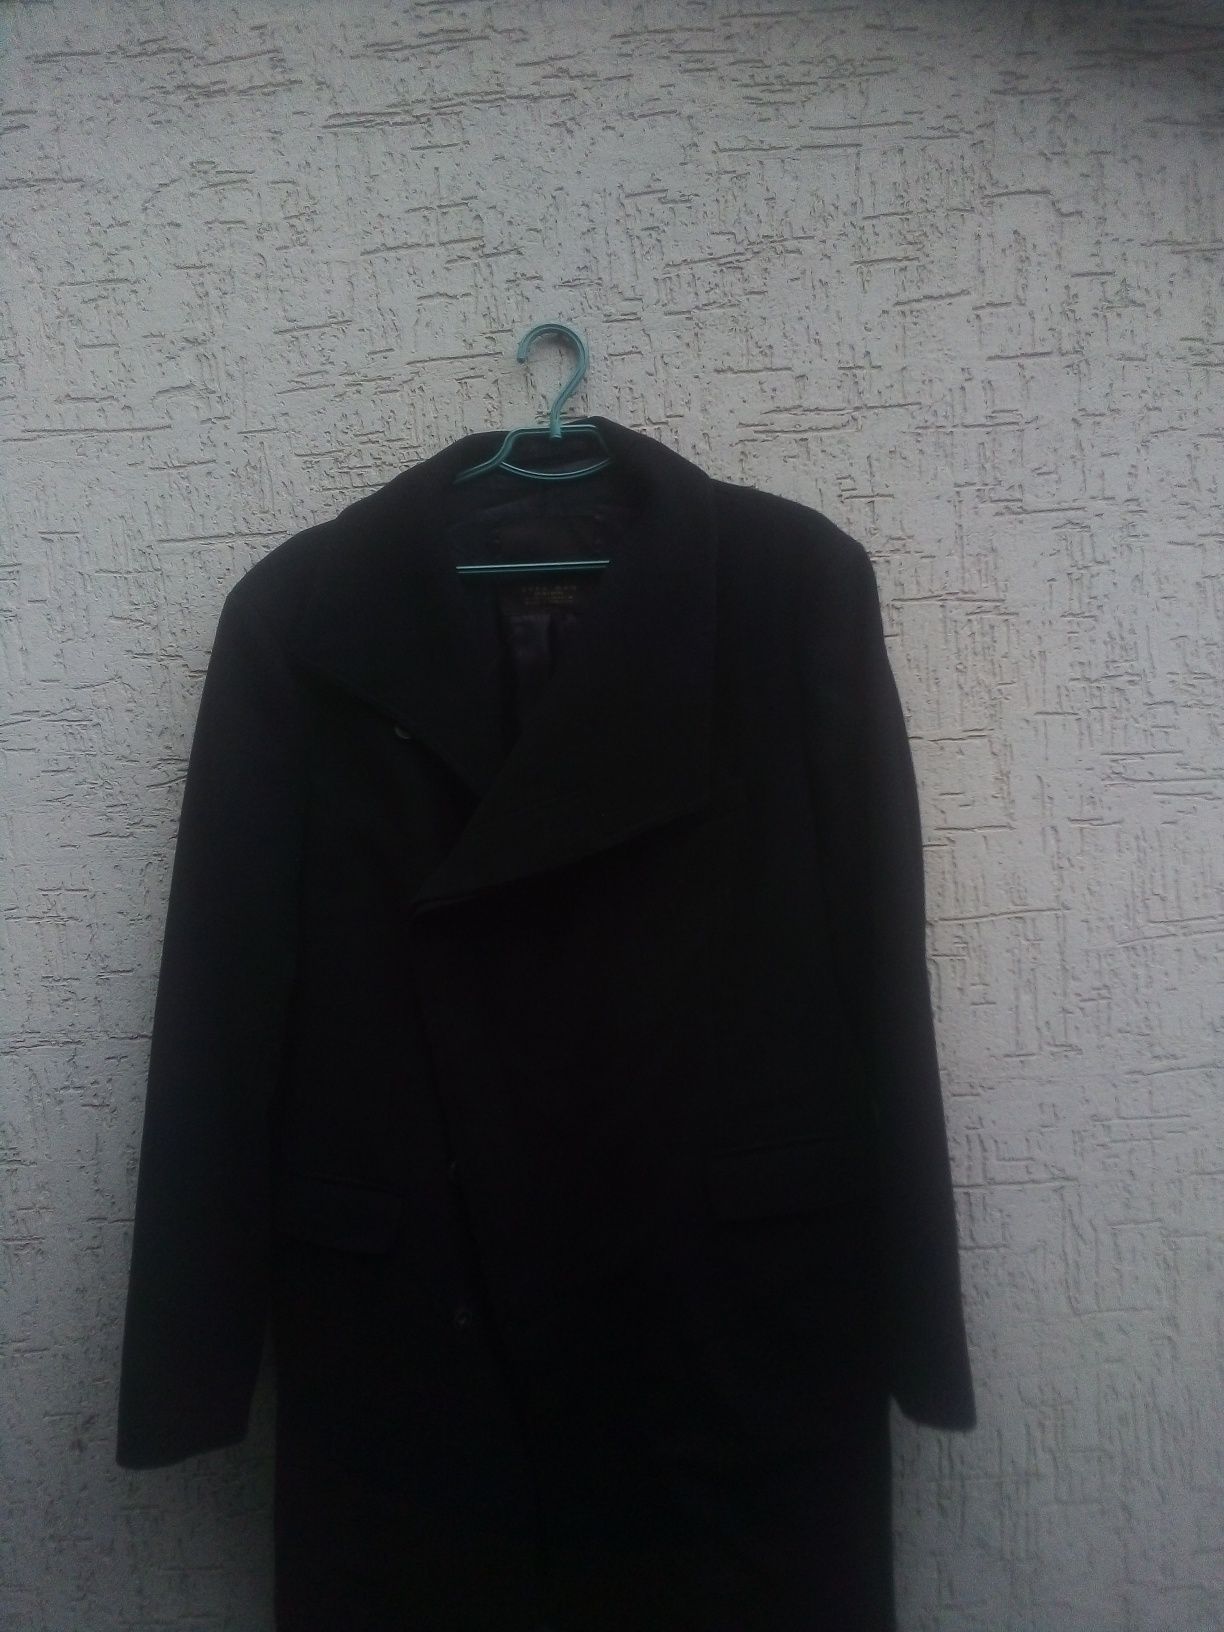 Пальто чёрного цвета Zara h&m L size новые